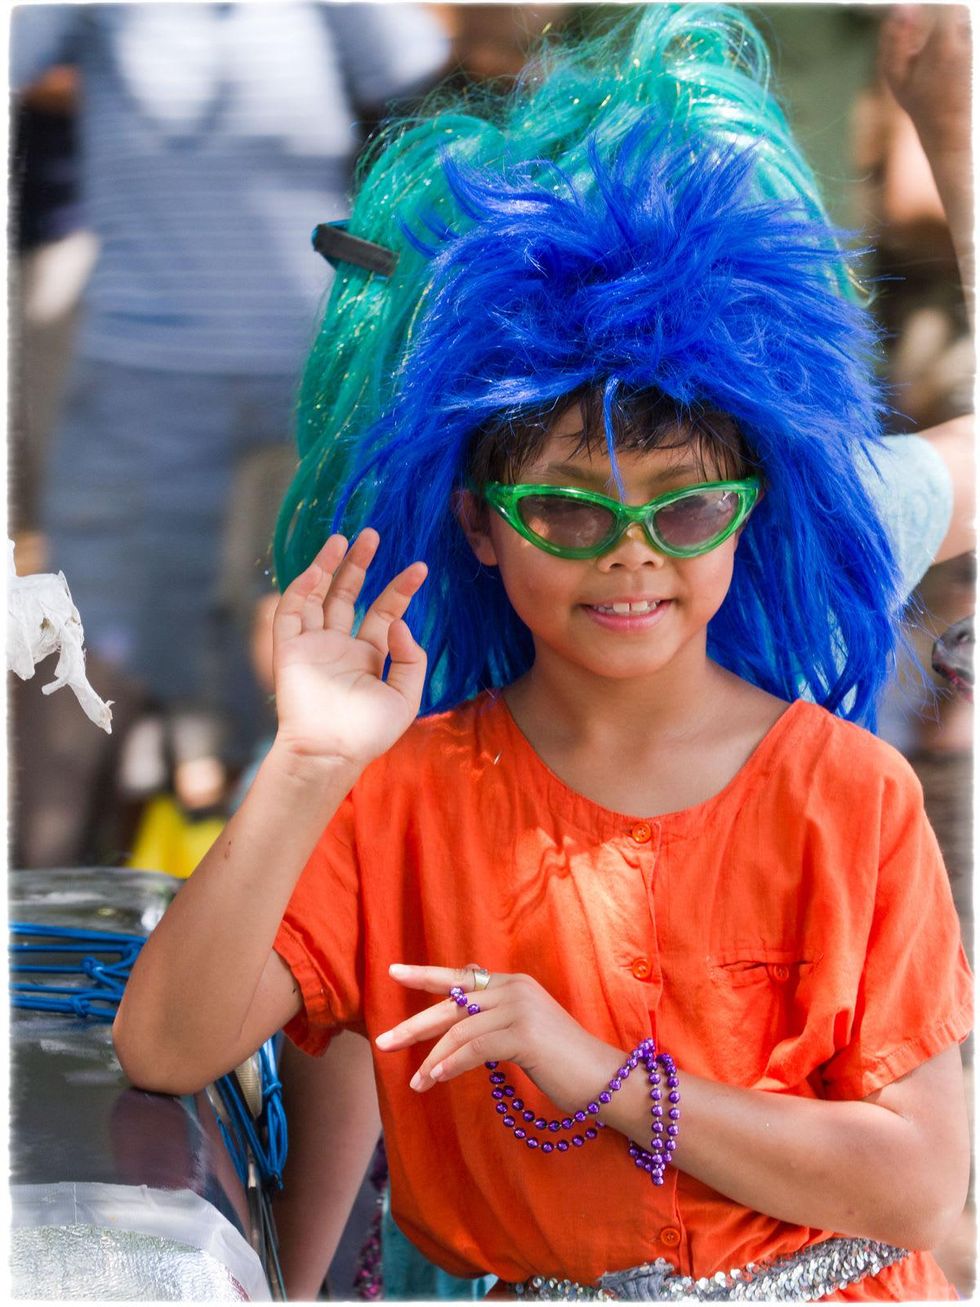 News_Art Car Parade_kid with blue hair_May 2012